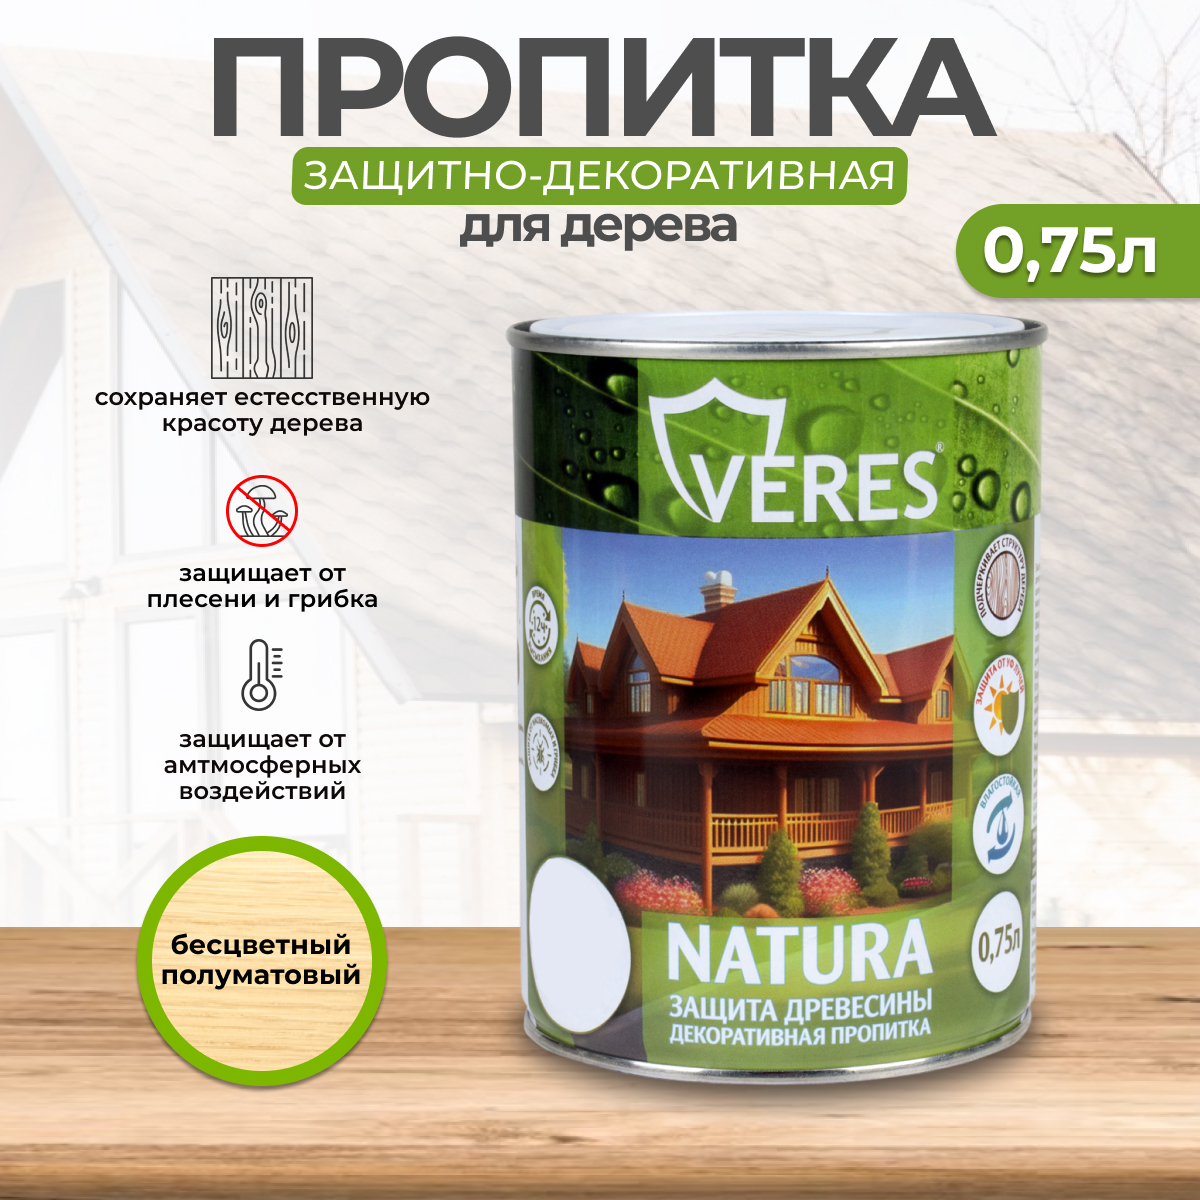 Декоративная пропитка для дерева Veres Natura полуматовая 0 75 л бесцветная, VR-131